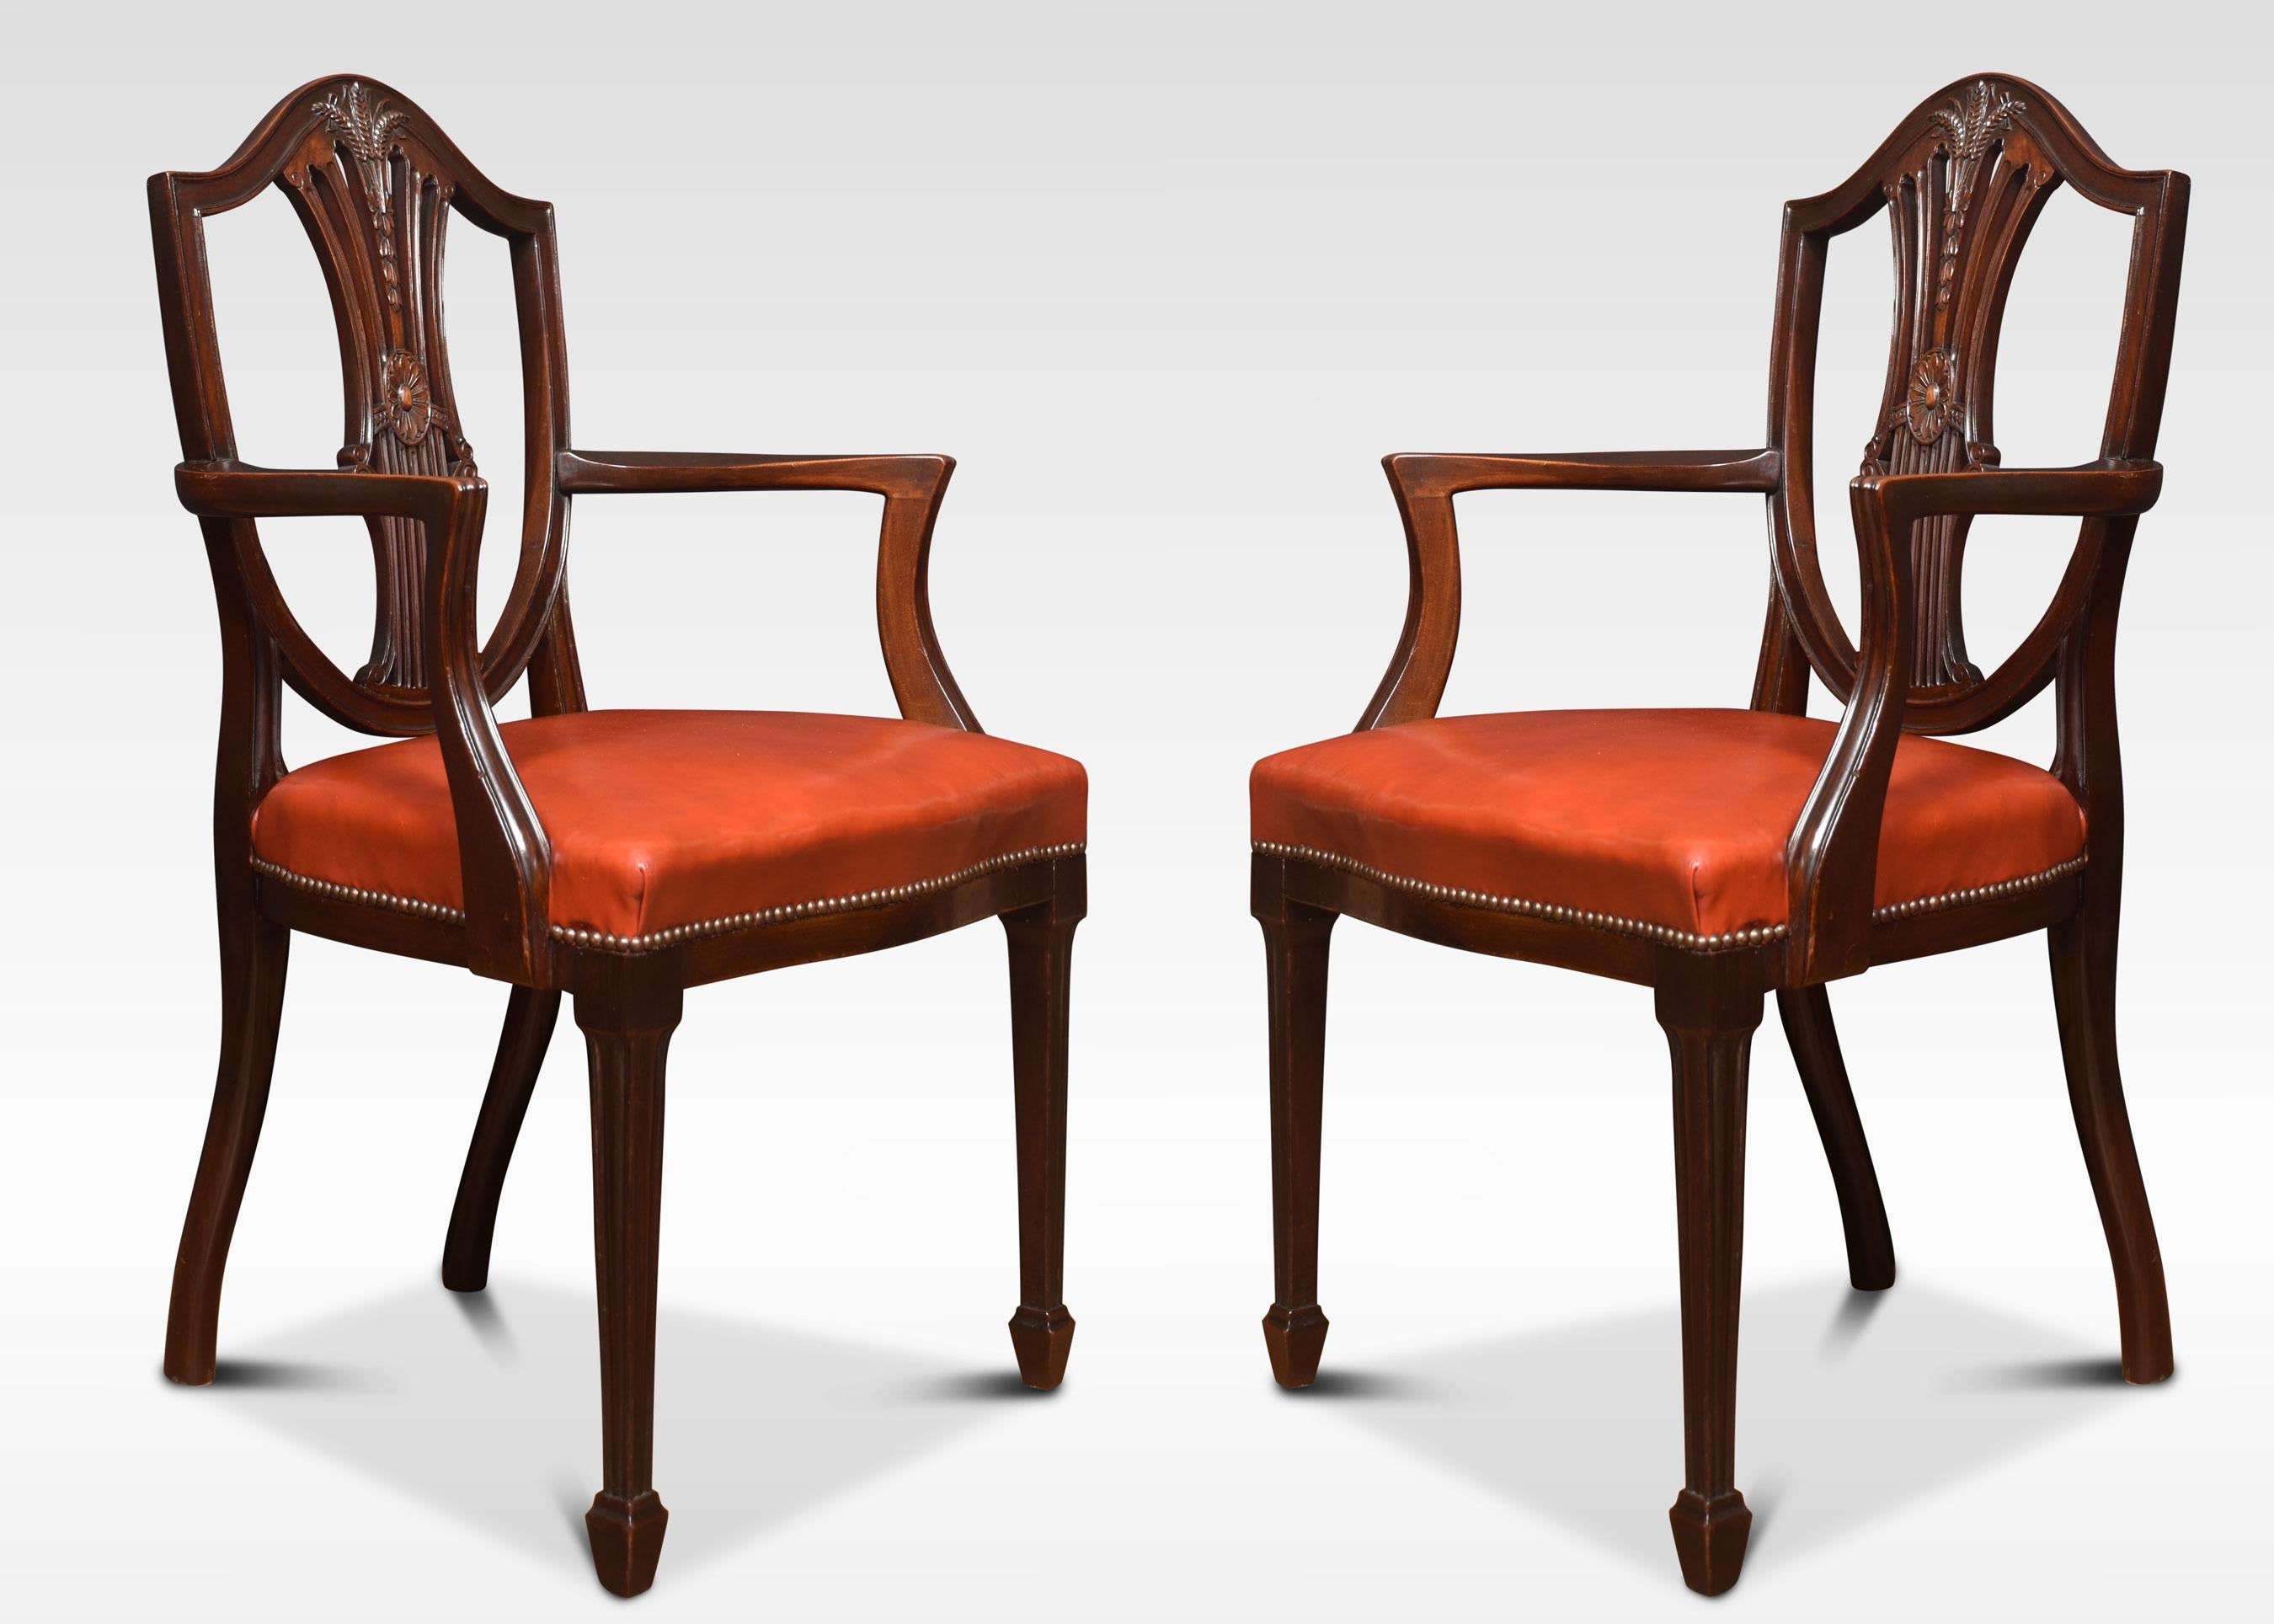 Un ensemble de huit chaises de salle à manger en acajou (six chaises, deux sculpteurs) de style Hepplewhite avec des plinthes percées sculptées en forme de gerbe de blé au-dessus de sièges en cuir rembourrés. Le tout repose sur des pieds carrés